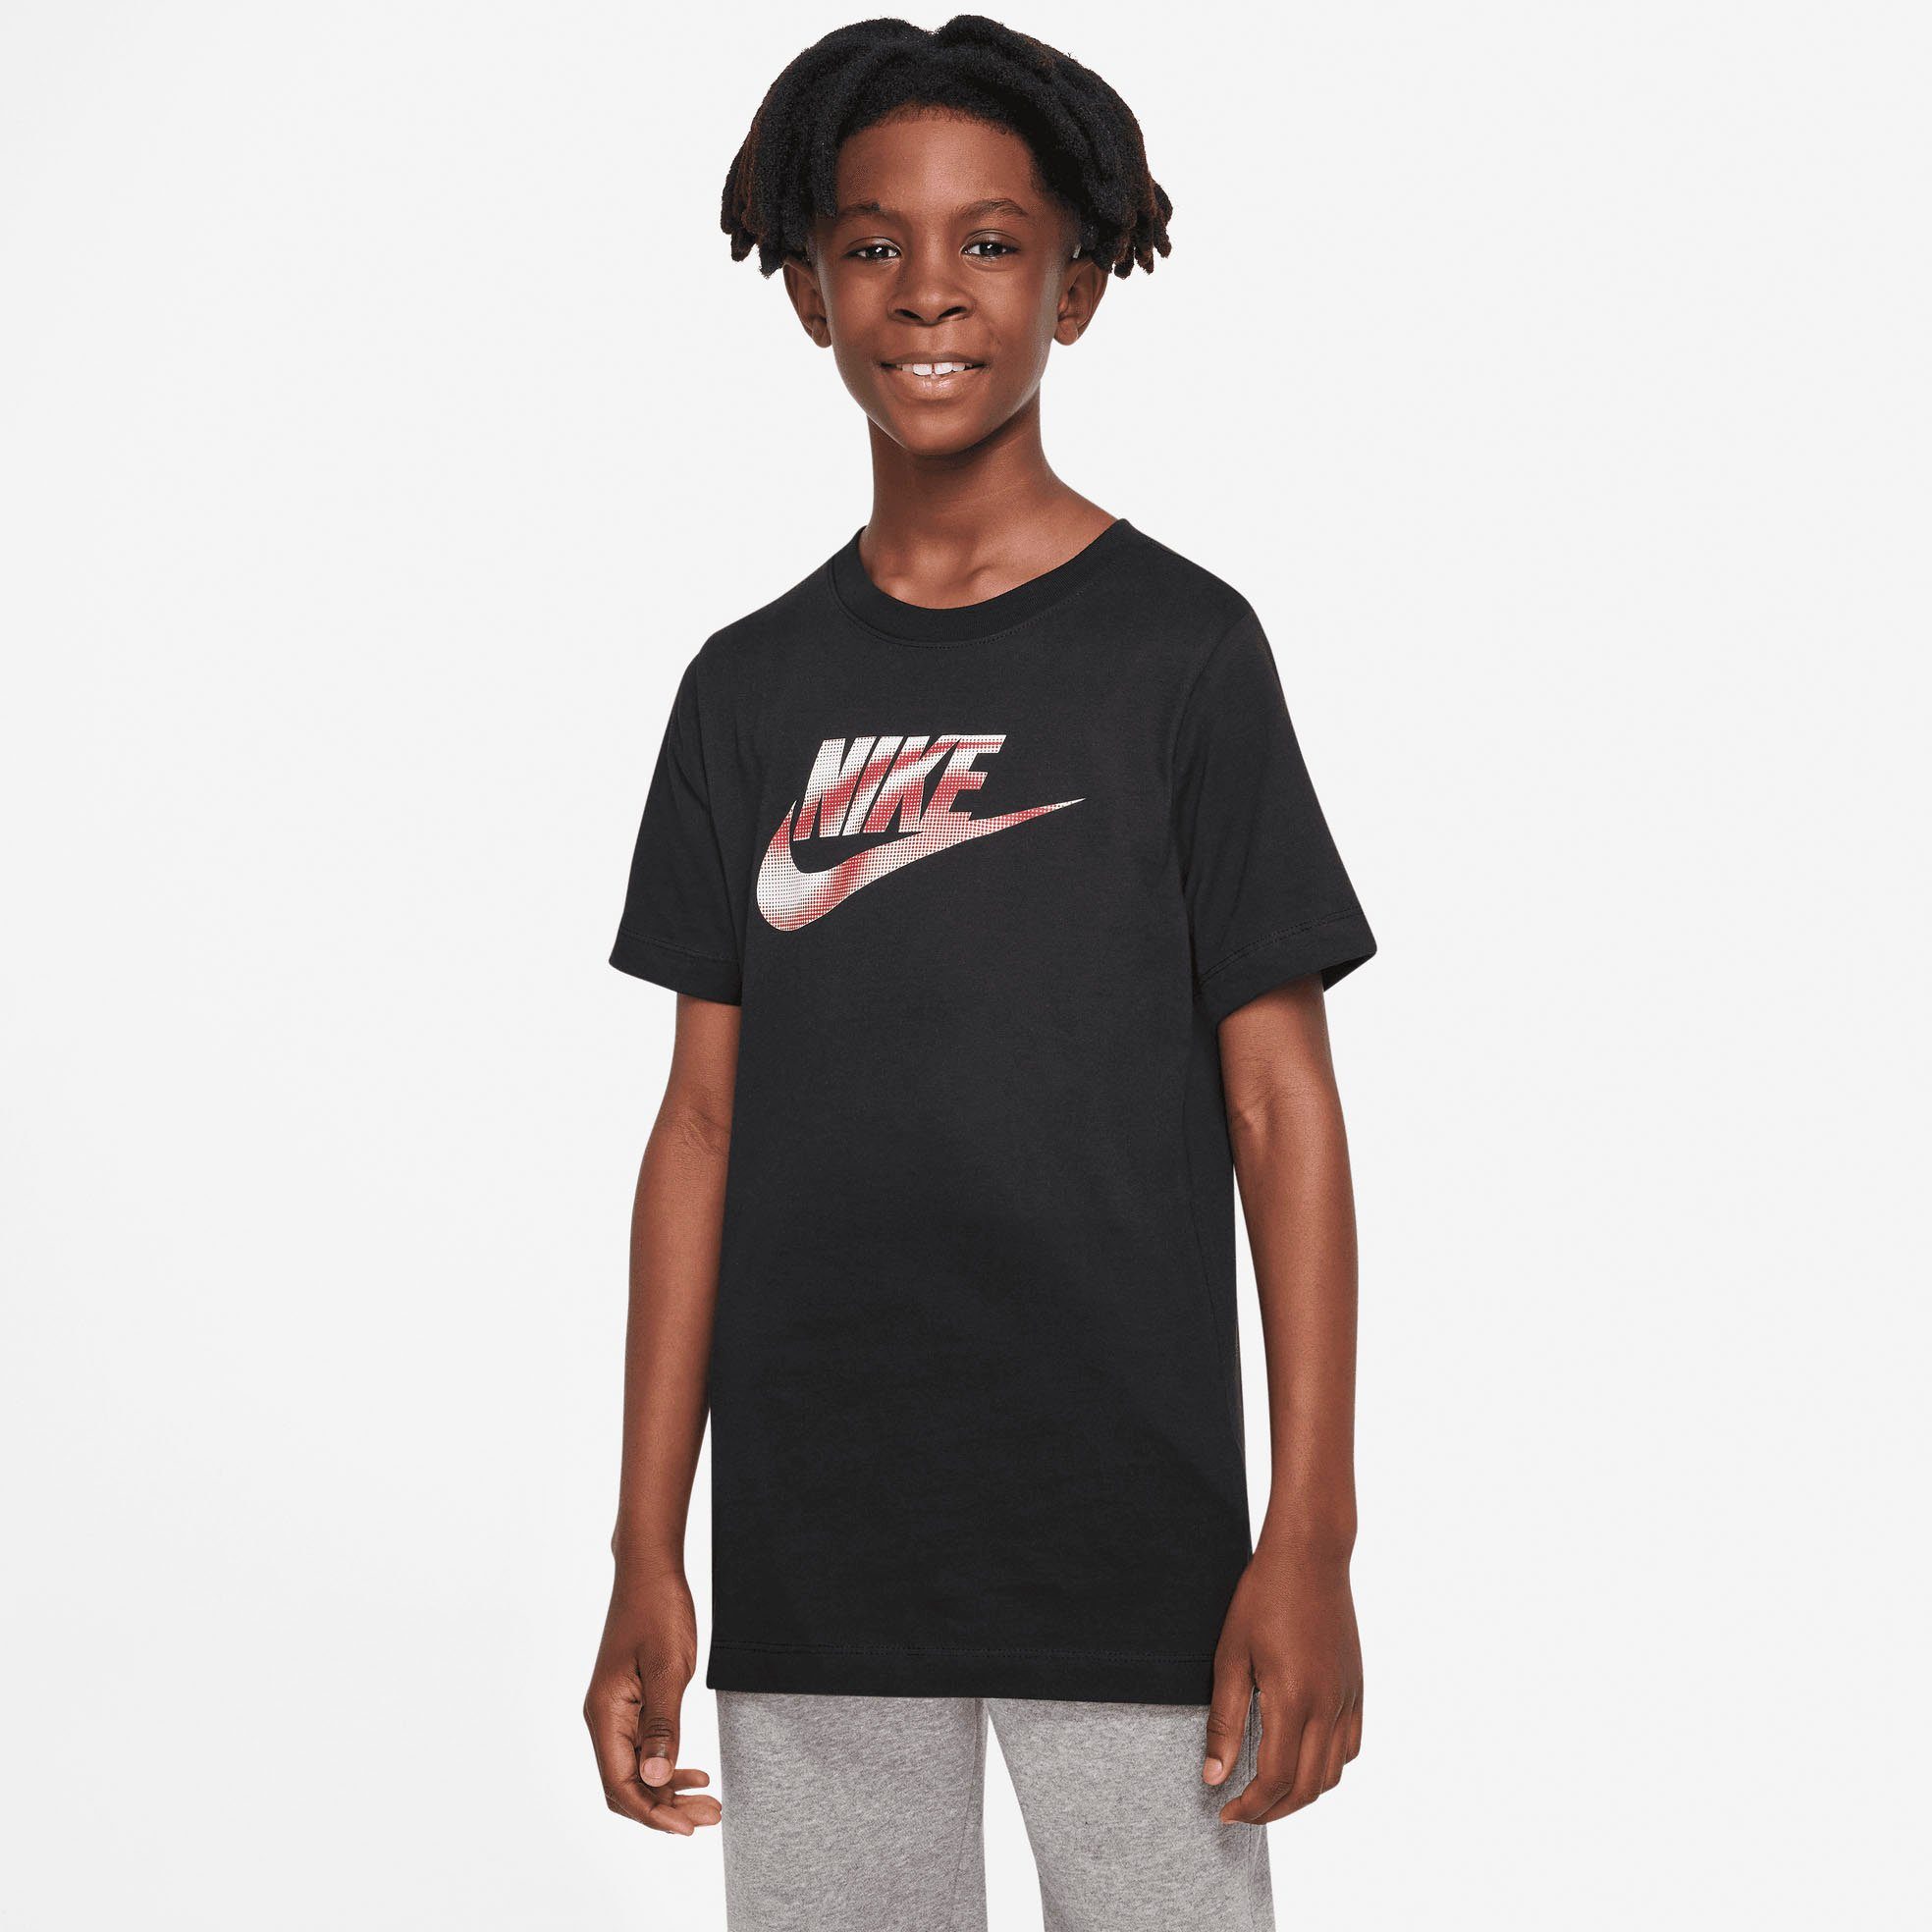 Nike Mädchen T-Shirts online kaufen | OTTO